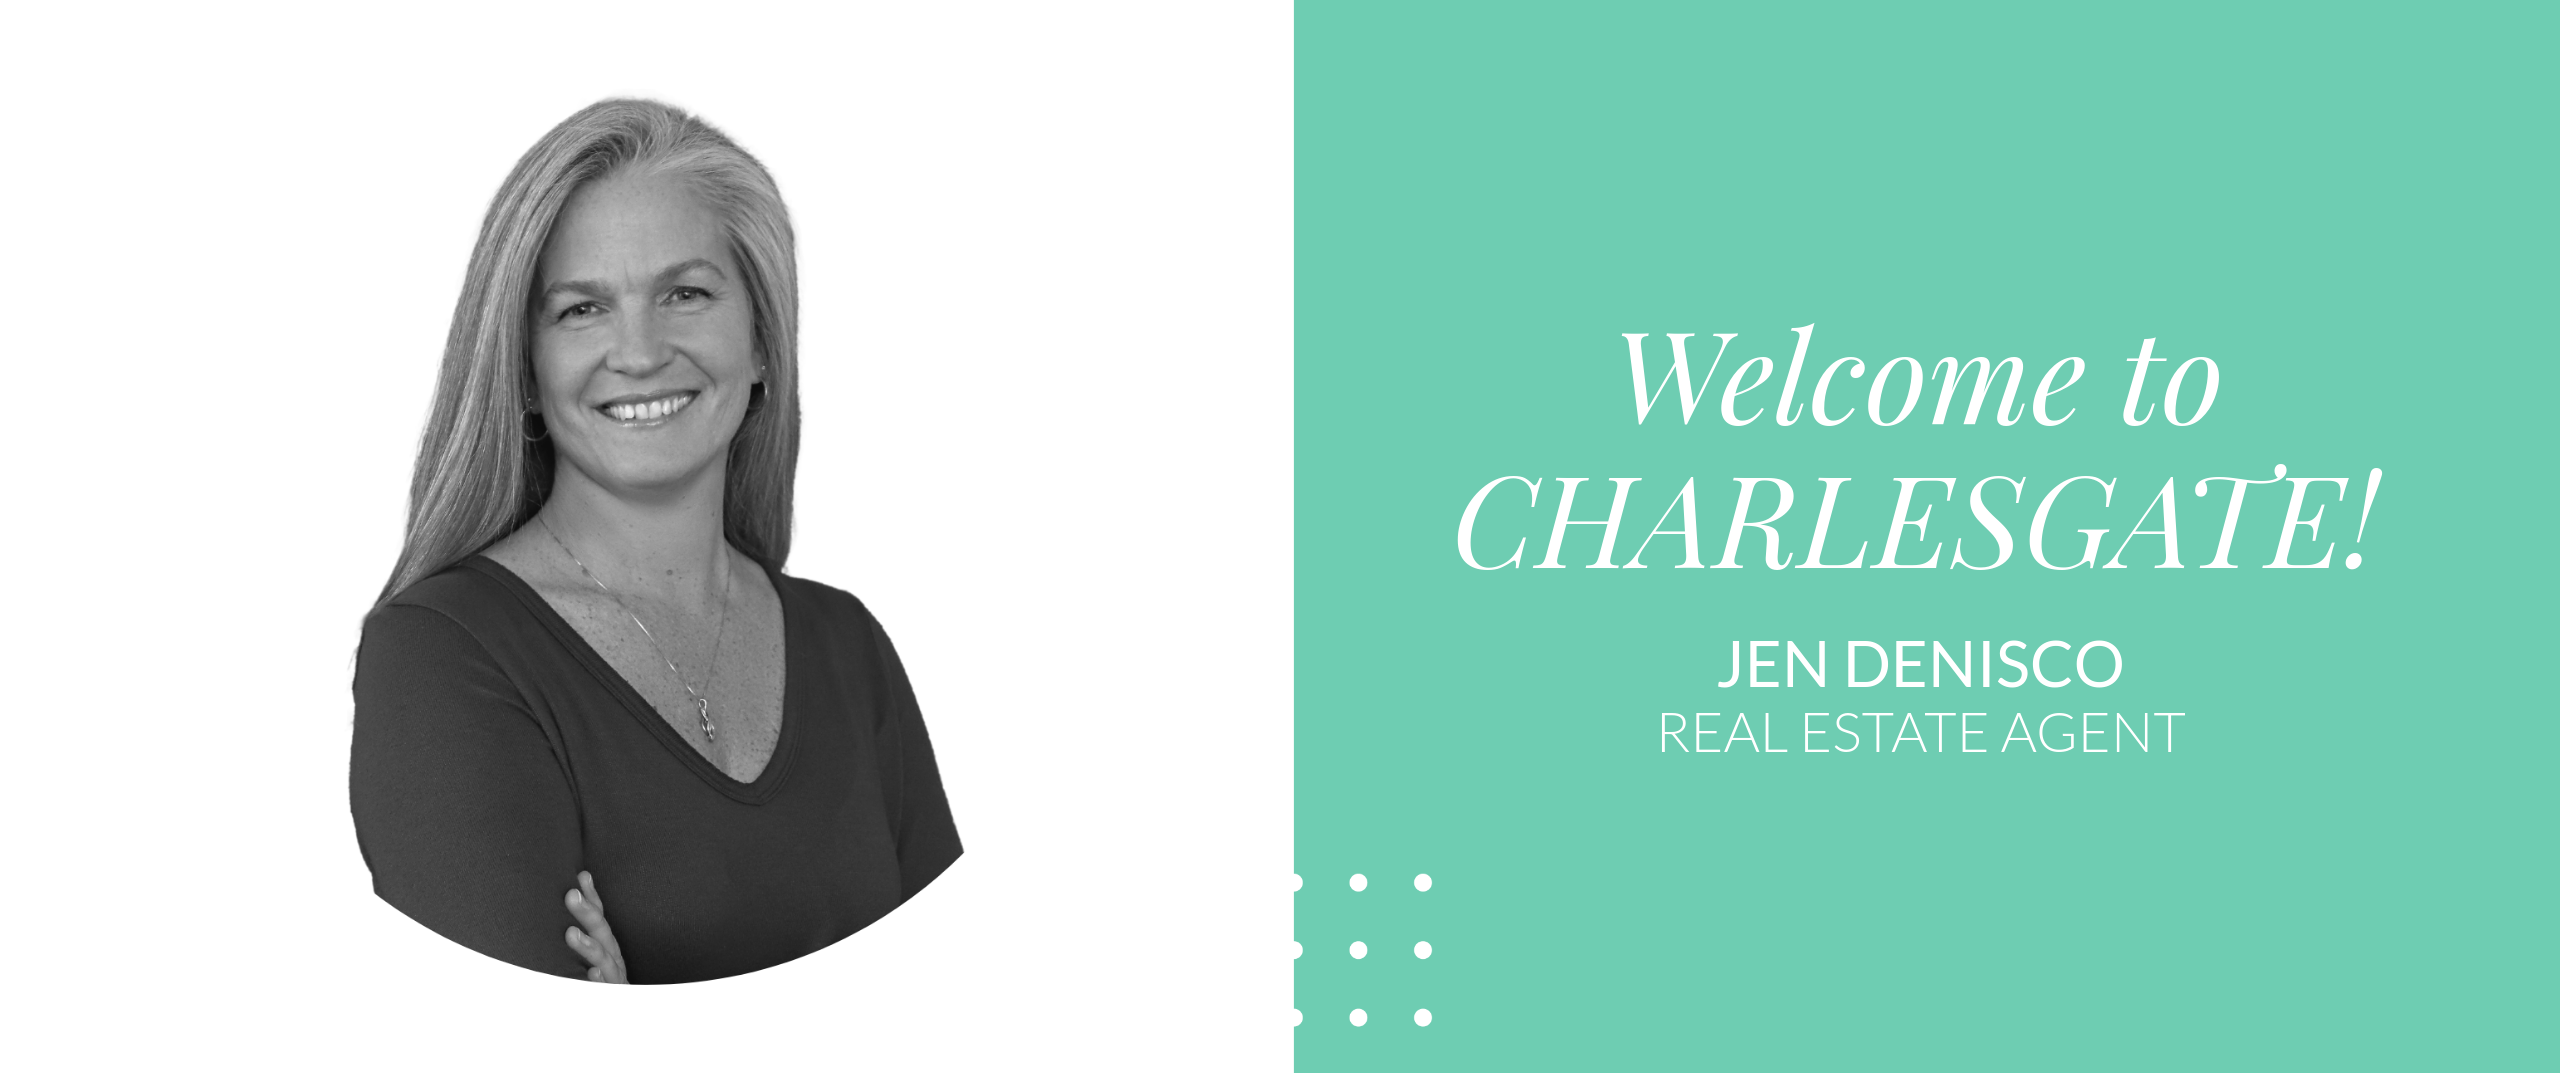 Welcome to CHARLESGATE, Jen DeNisco!